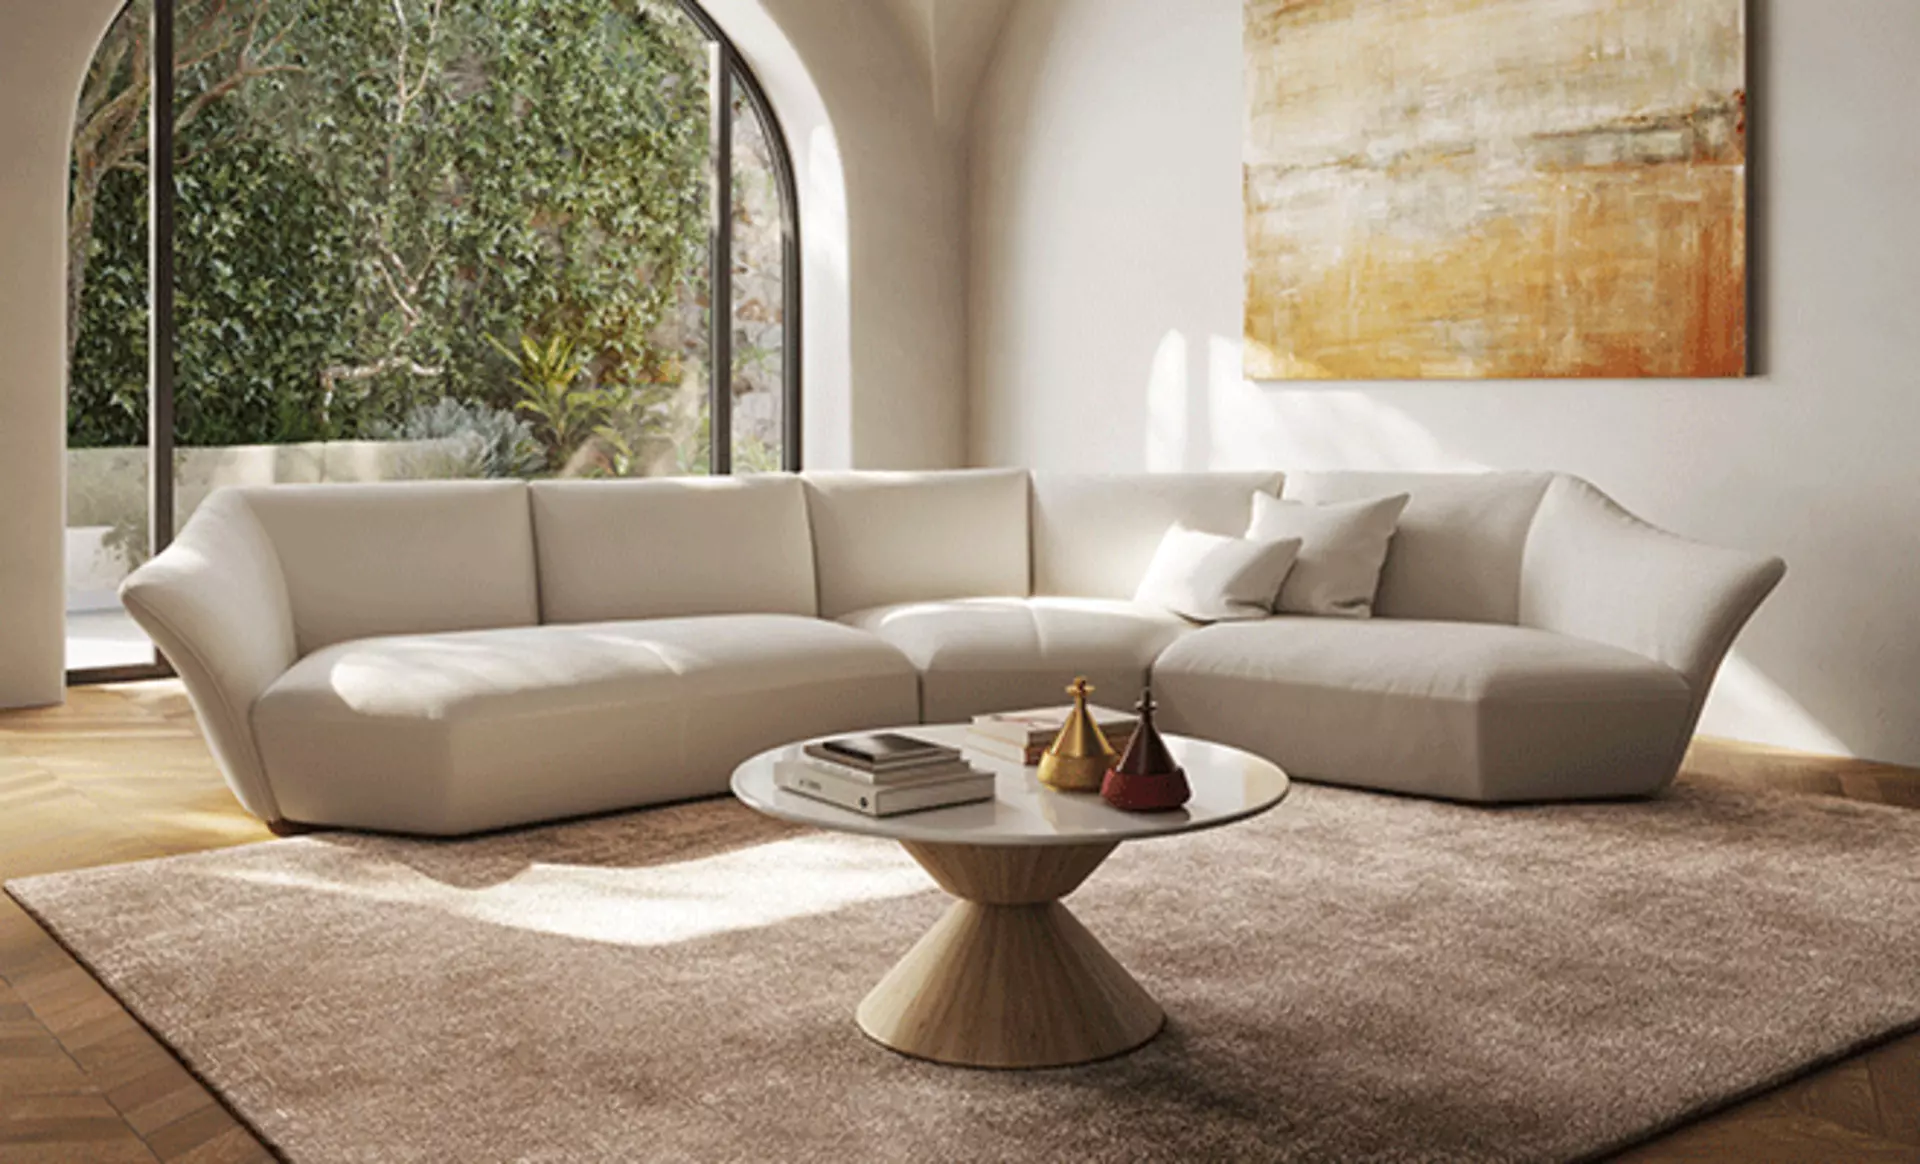 Sinnbild ästhetischer Handwerkskunst - komfortable Polsterlandschaften von Natuzzi Italia bei Möbel Inhofer